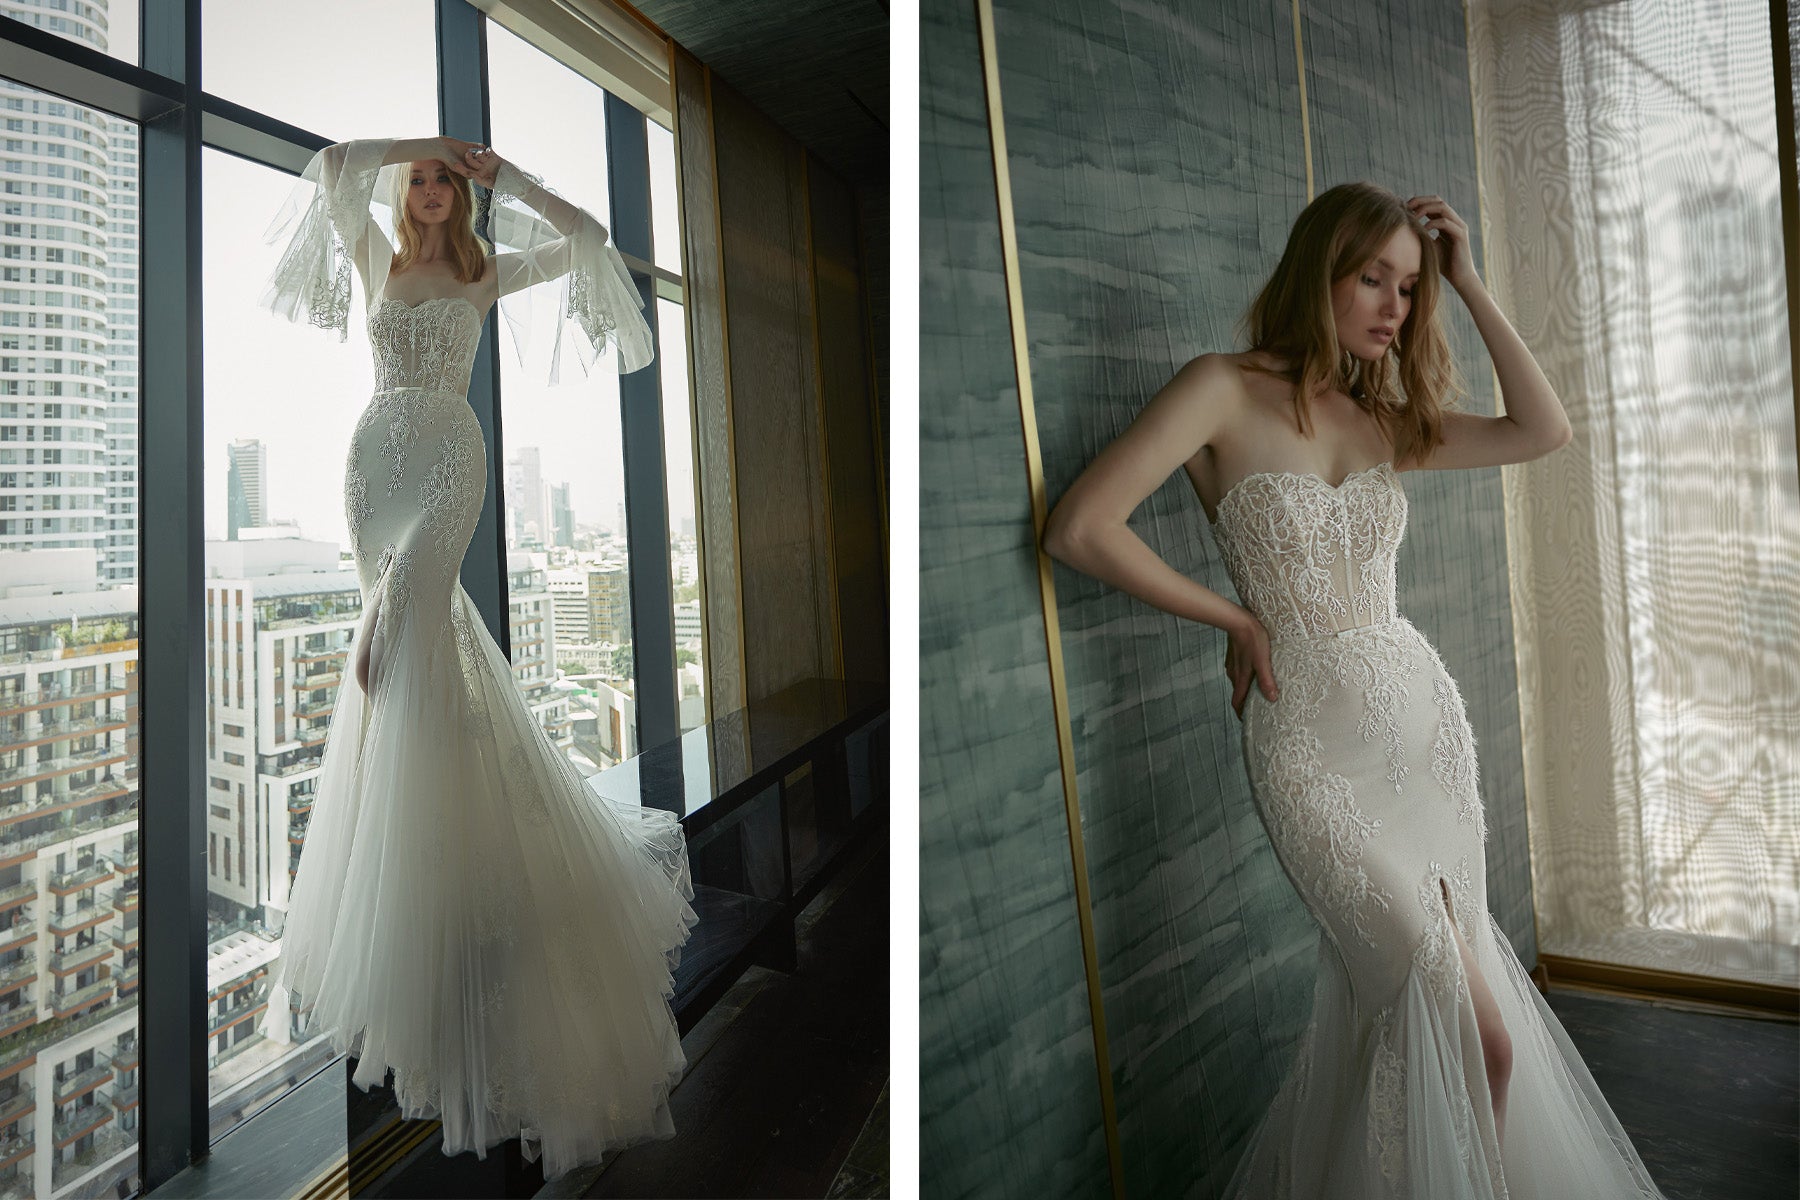 Eternal-bridal-neta-dover-wedding-dress-Giselle